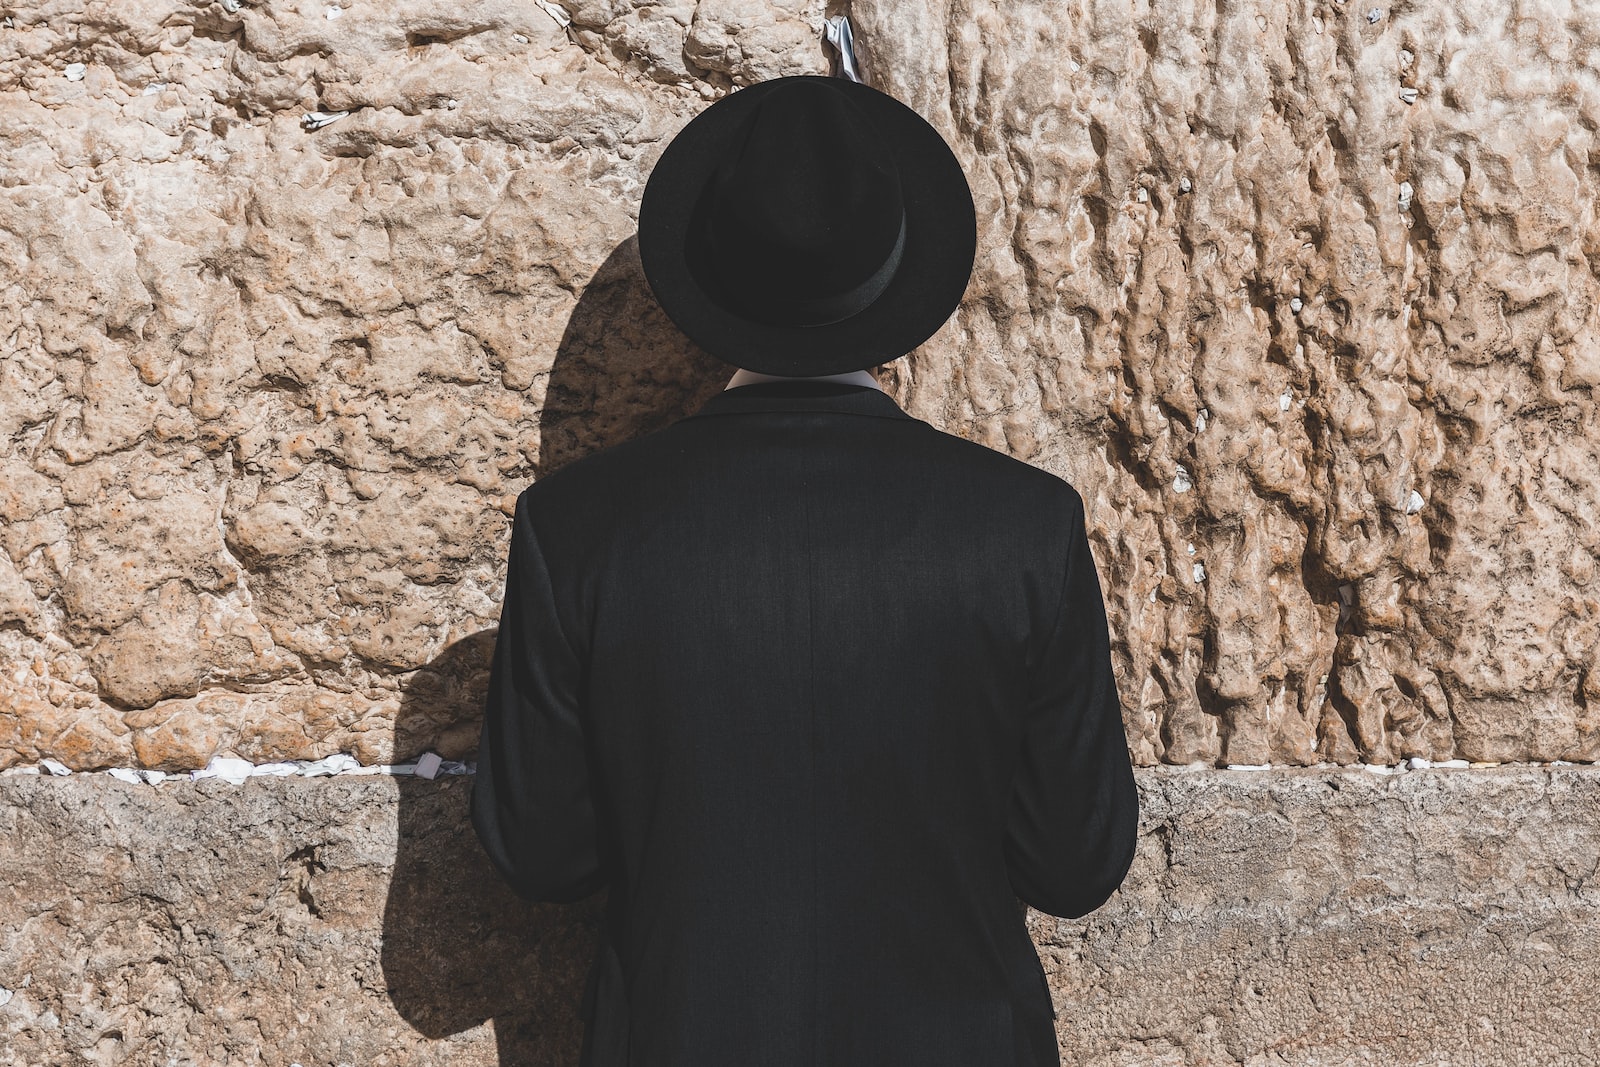 Man praying in Israel